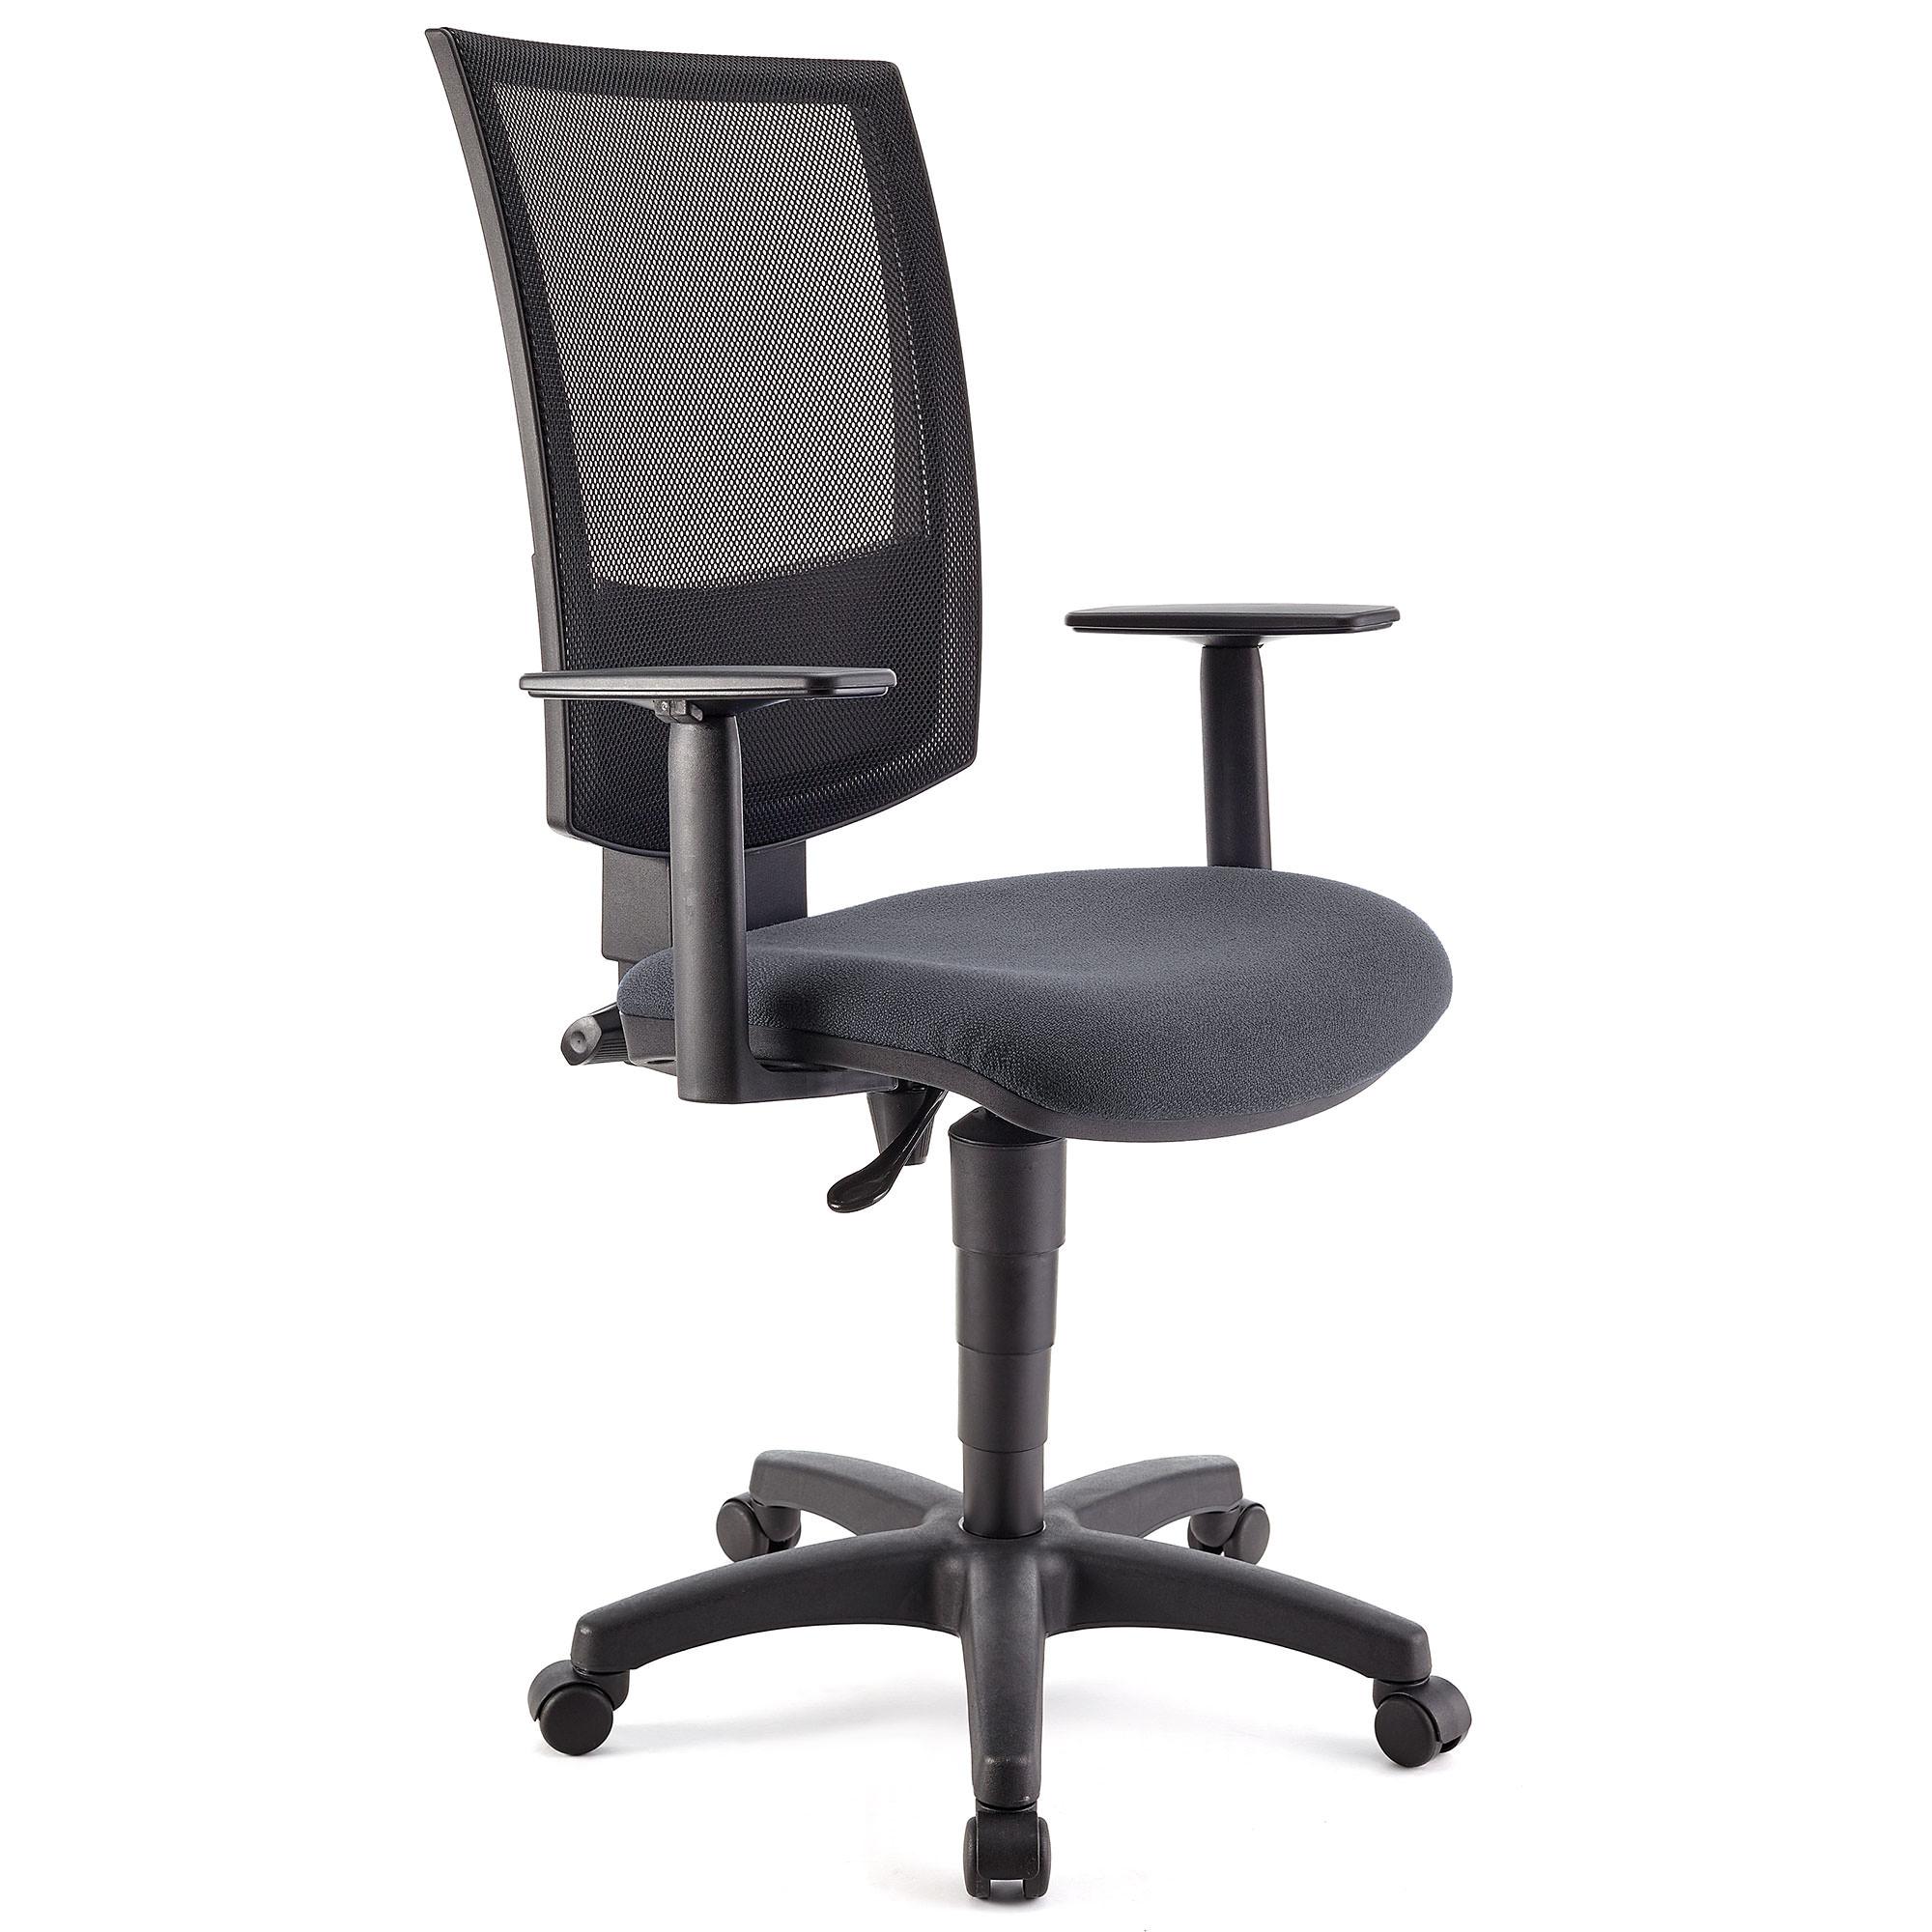 Bürostuhl PANDORA PLUS mit verstellbaren Armlehnen, Rückenlehne mit Netzbezug, dicke Polsterung, Farbe Grau